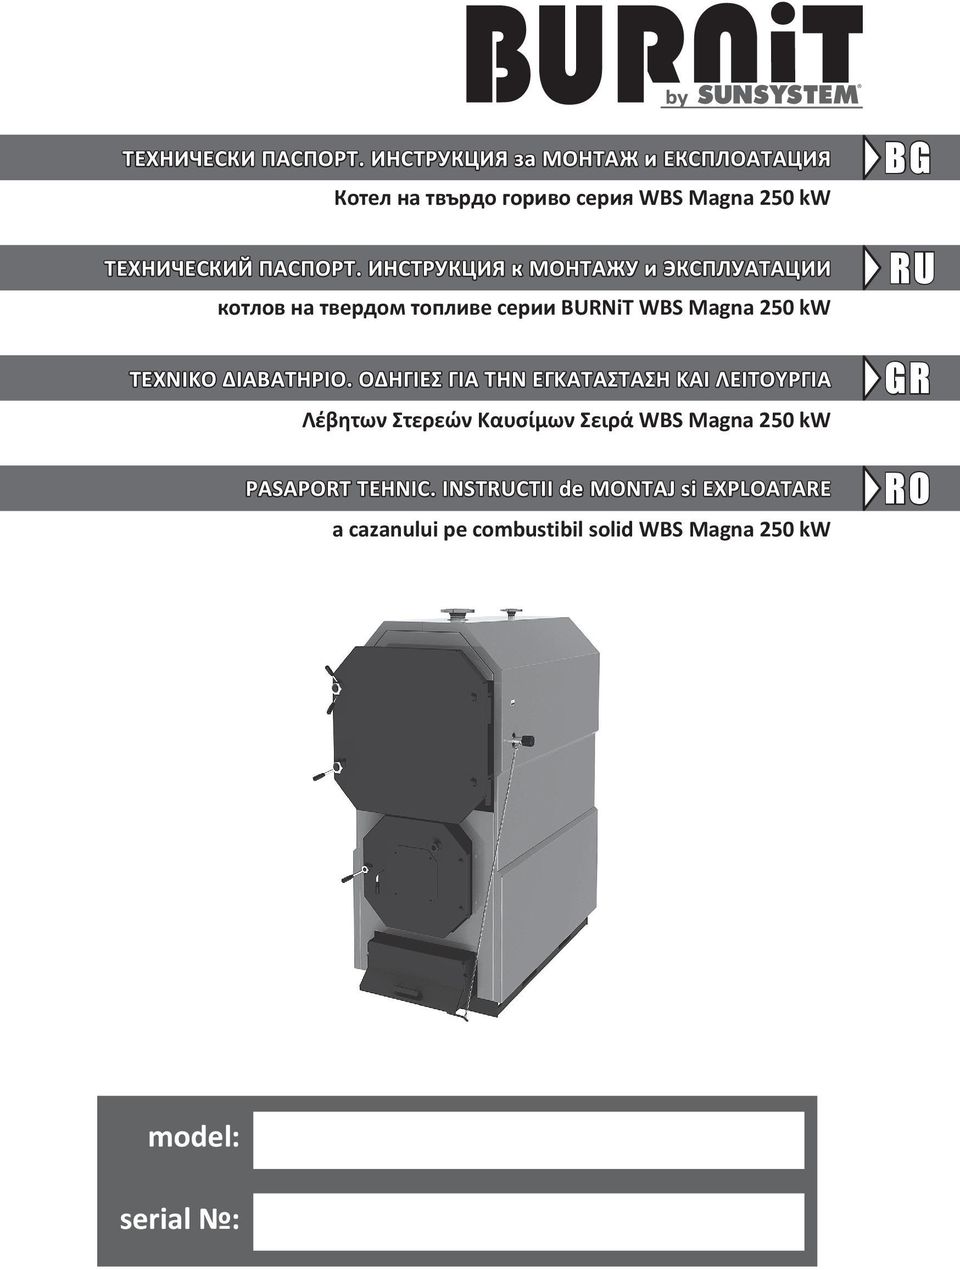 ИНСТРУКЦИЯ к МОНТАЖУ и ЭКСПЛУАТАЦИИ котлов на твердом топливе серии BURNiT WBS Magna 250 kw ΤΕΧΝΙΚΟ ΔΙΑΒΑΤΗΡΙΟ.